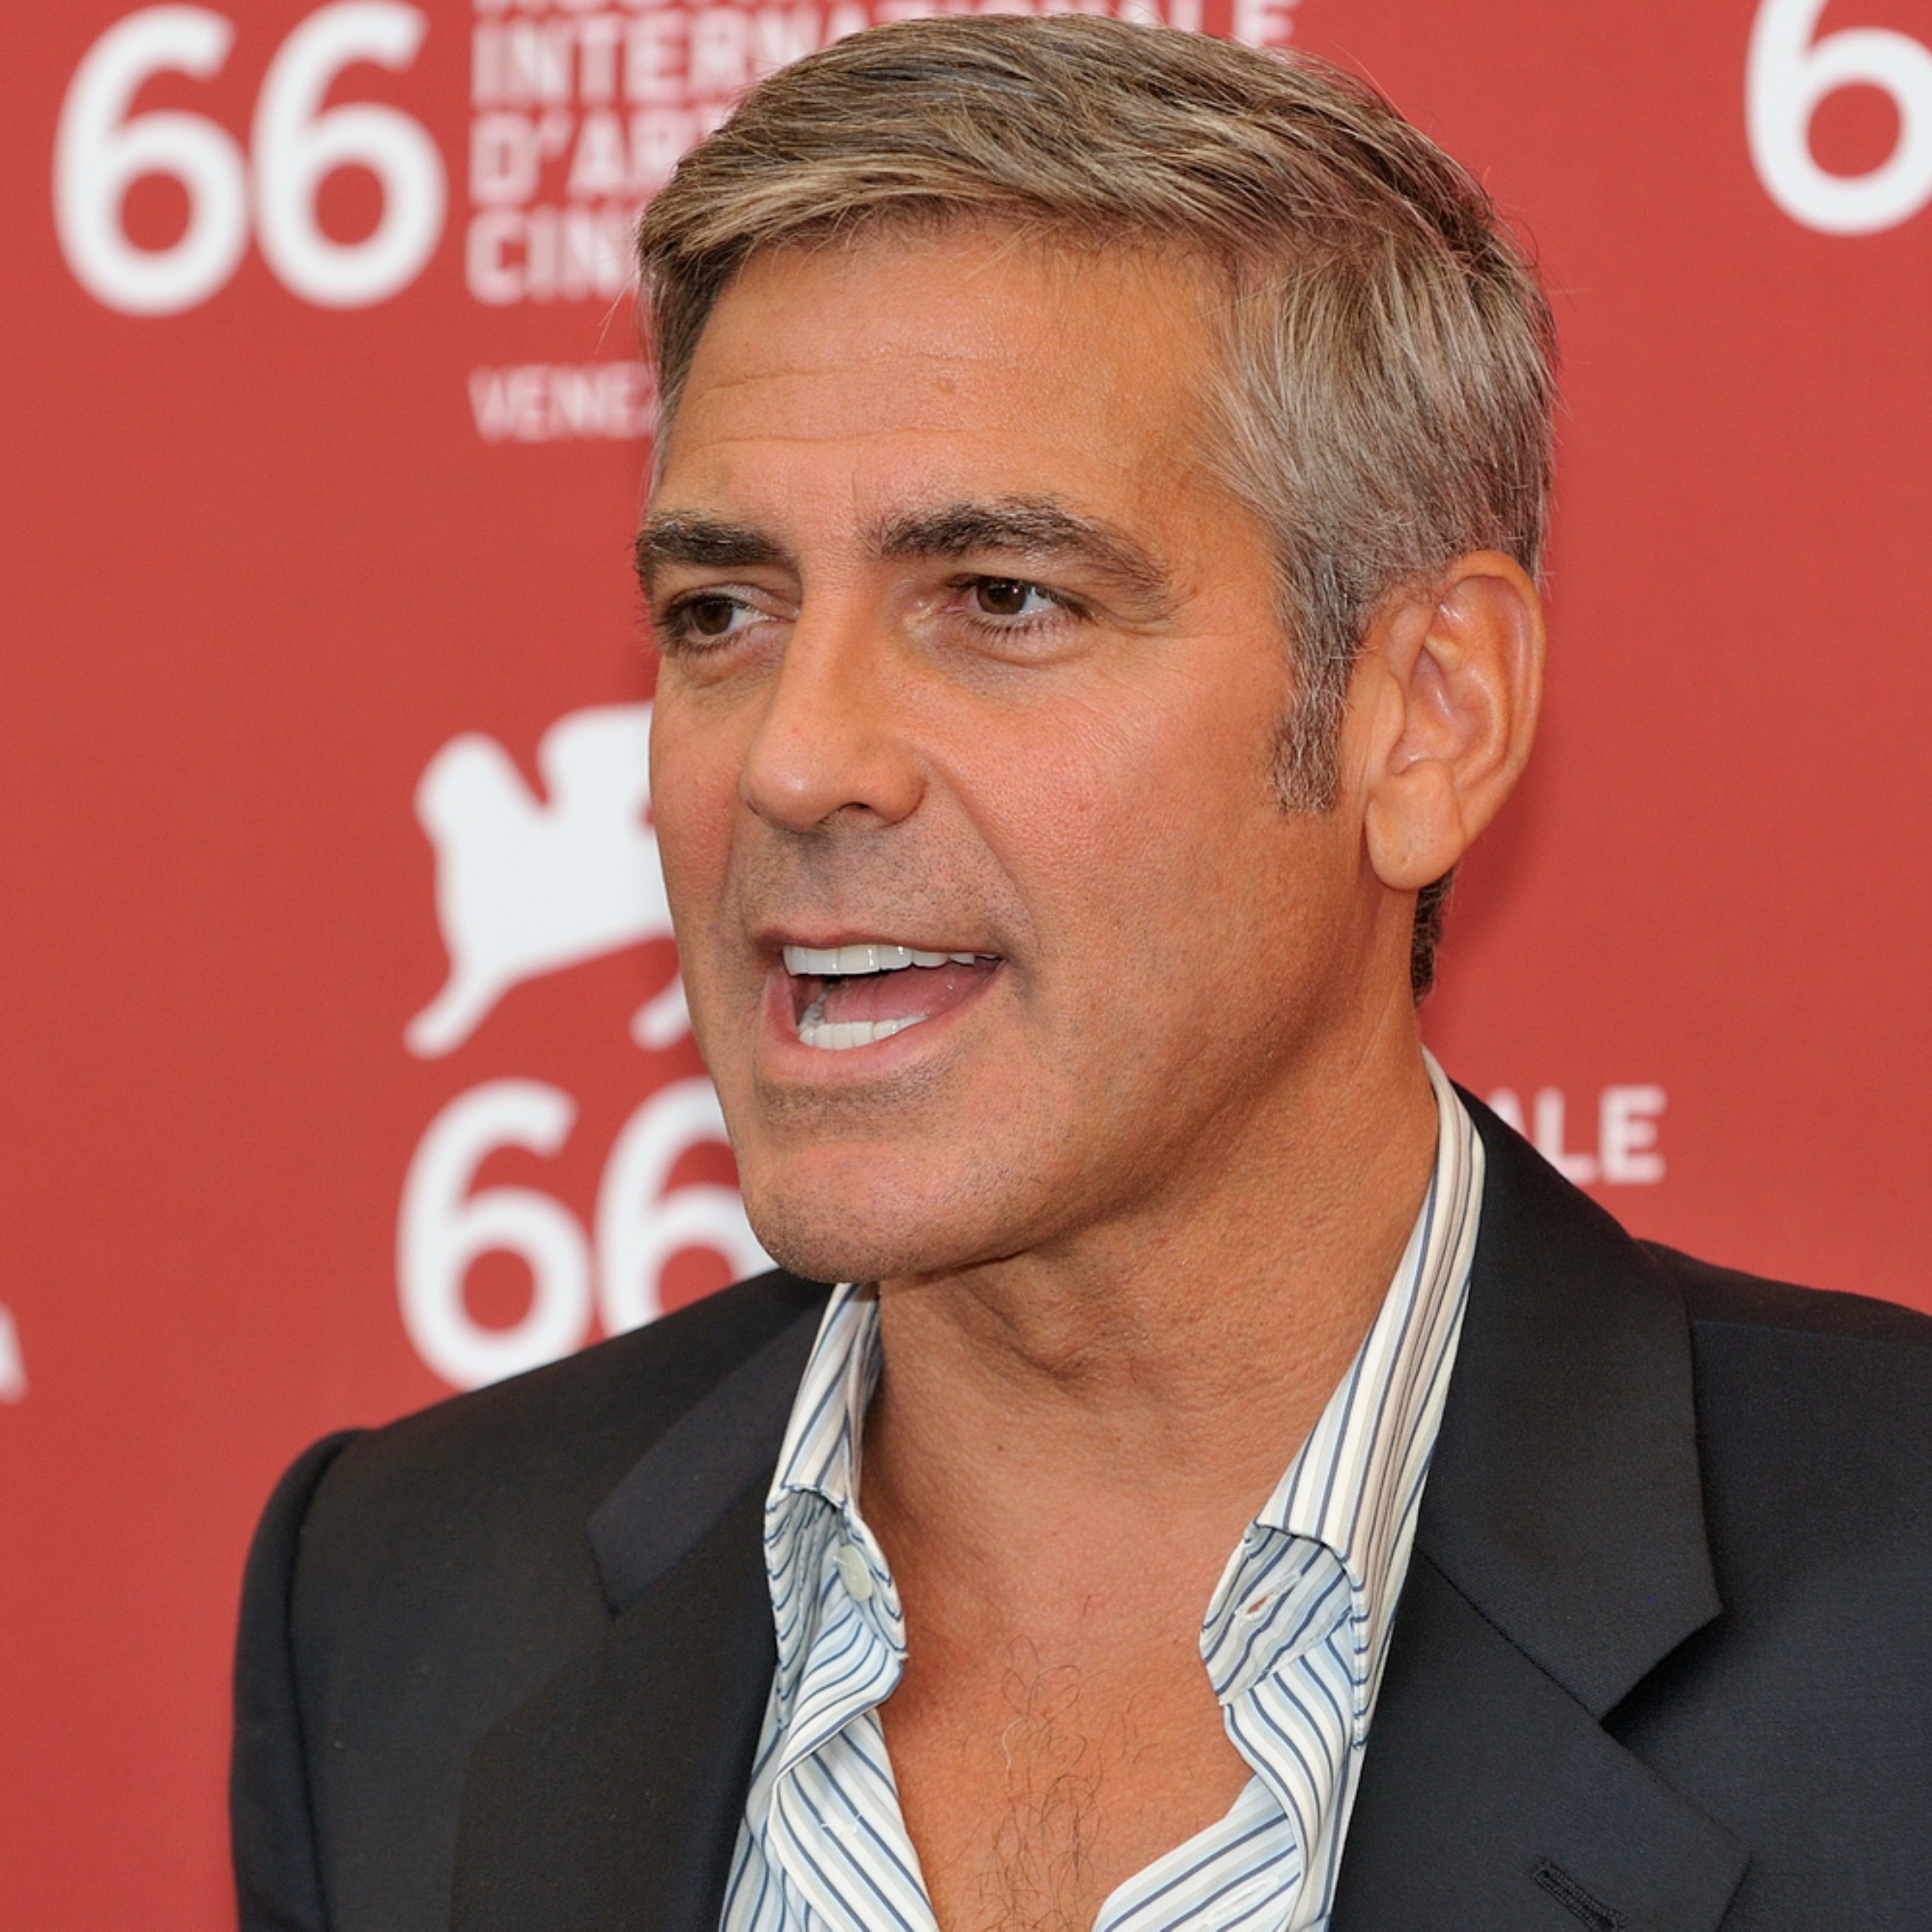 George Clooney és molt fan del cinema clàssic i ho demostra triant actor i pel·lícula favorita